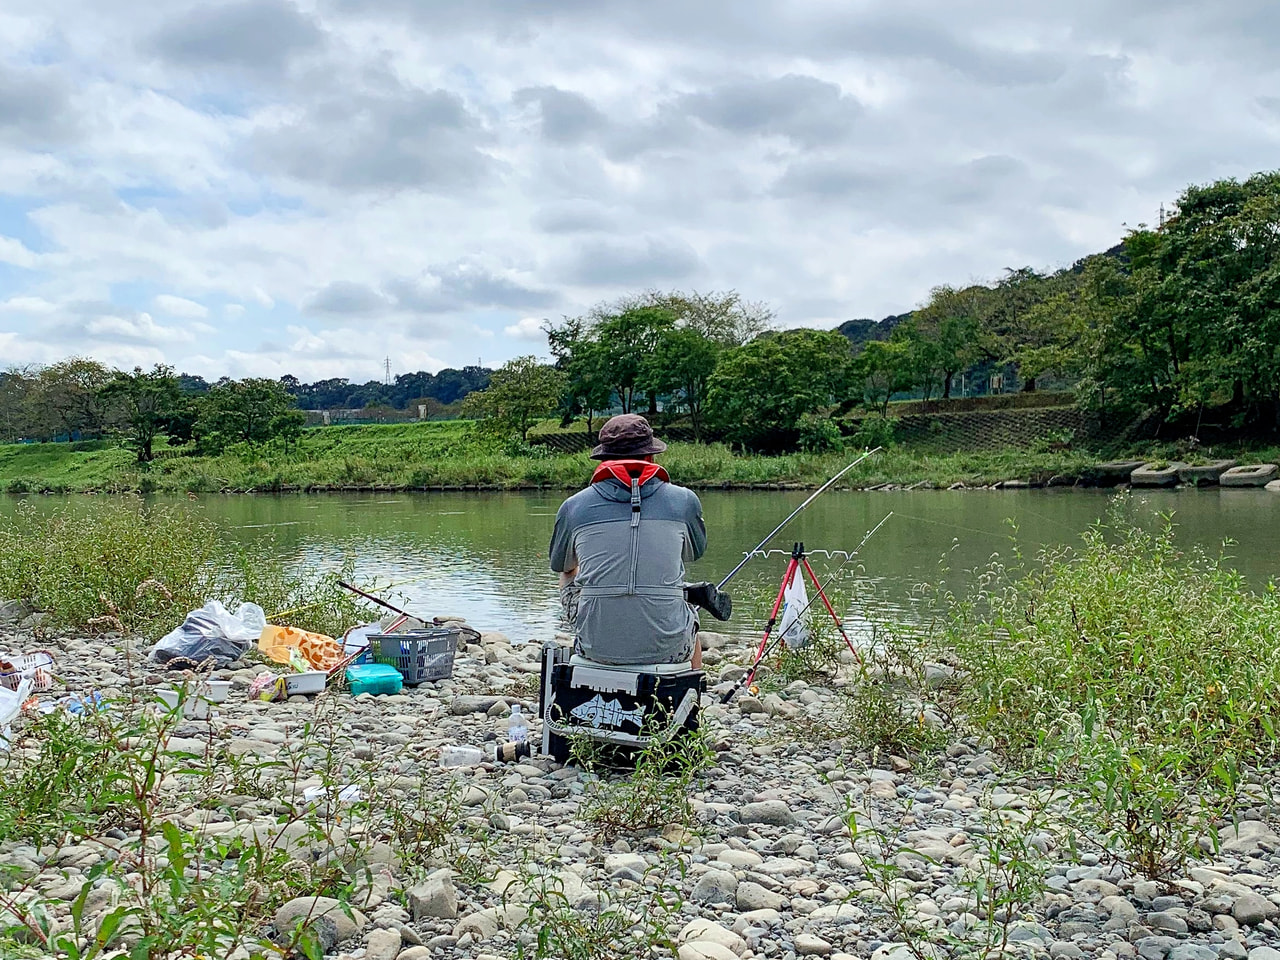 爆釣モーニング「相模川での鯉釣り実釣レポート」 | The Burn - Fm yokohama 84.7